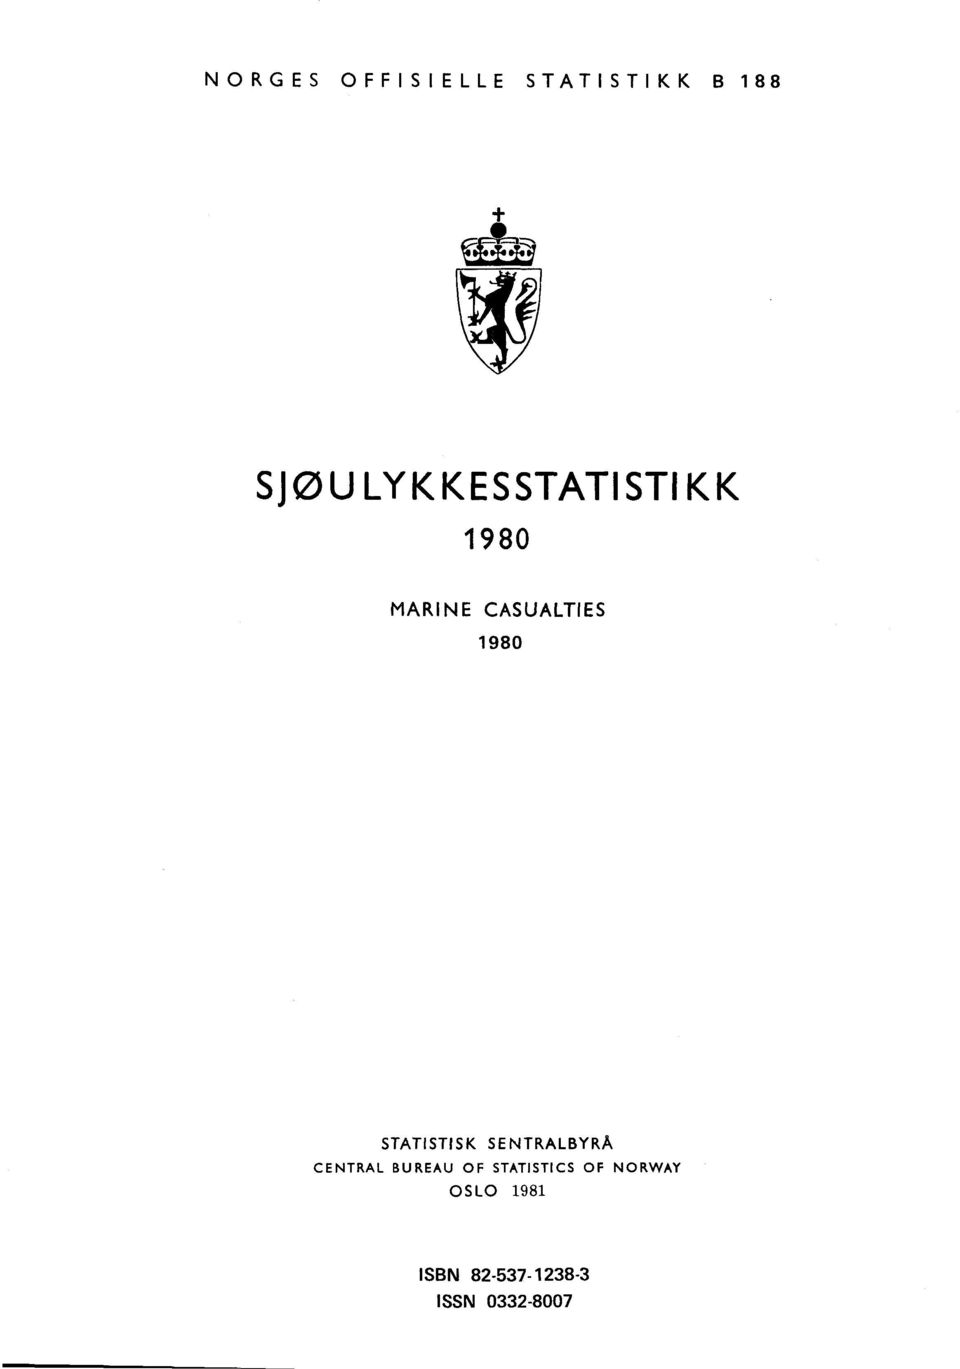 STATISTISK SENTRALBYRÅ CENTRAL BUREAU OF